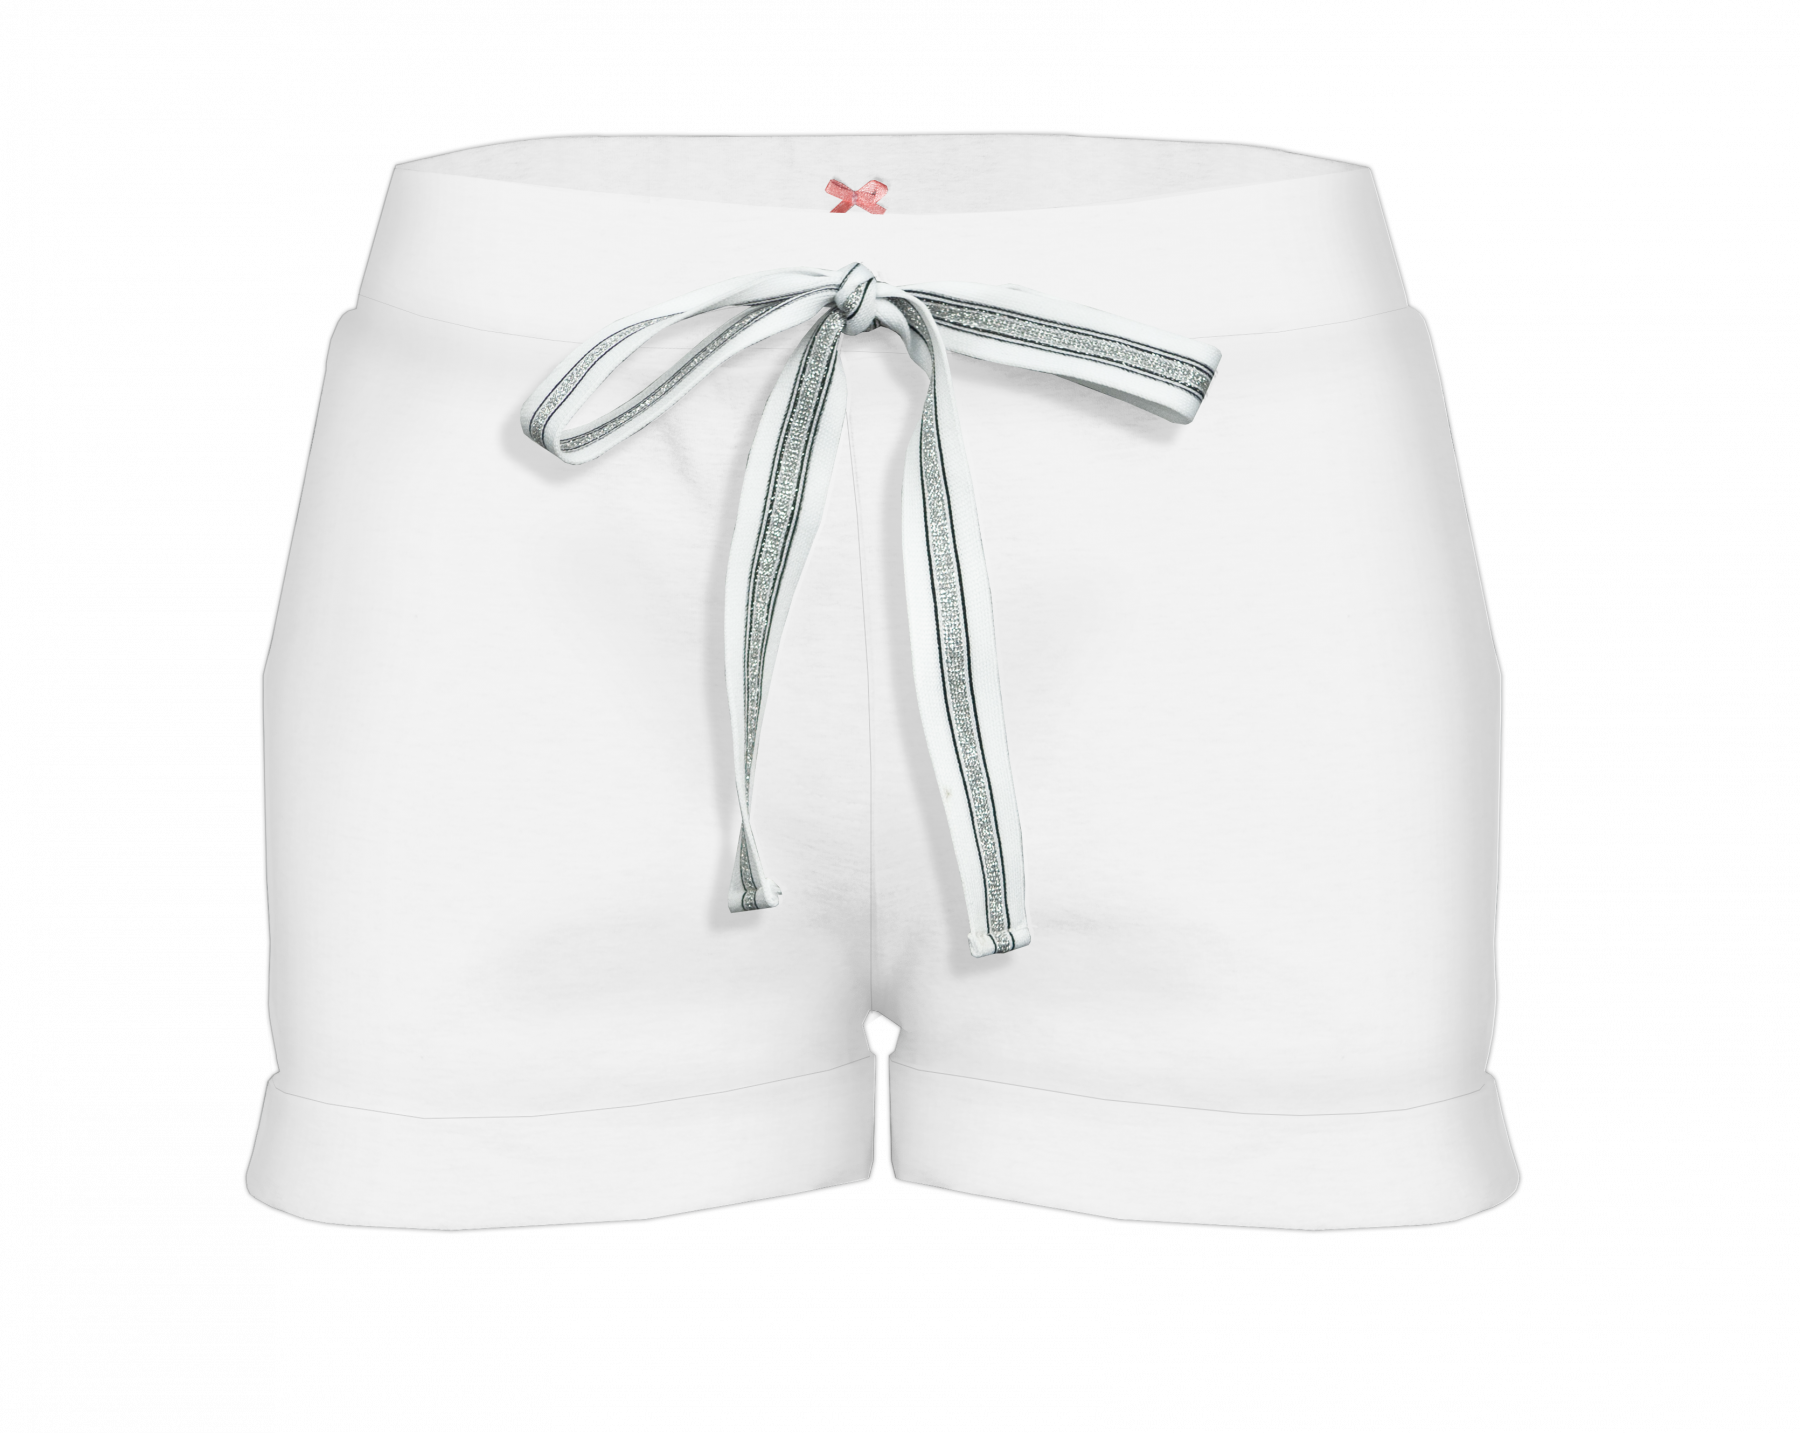 Women’s shorts - white S-M